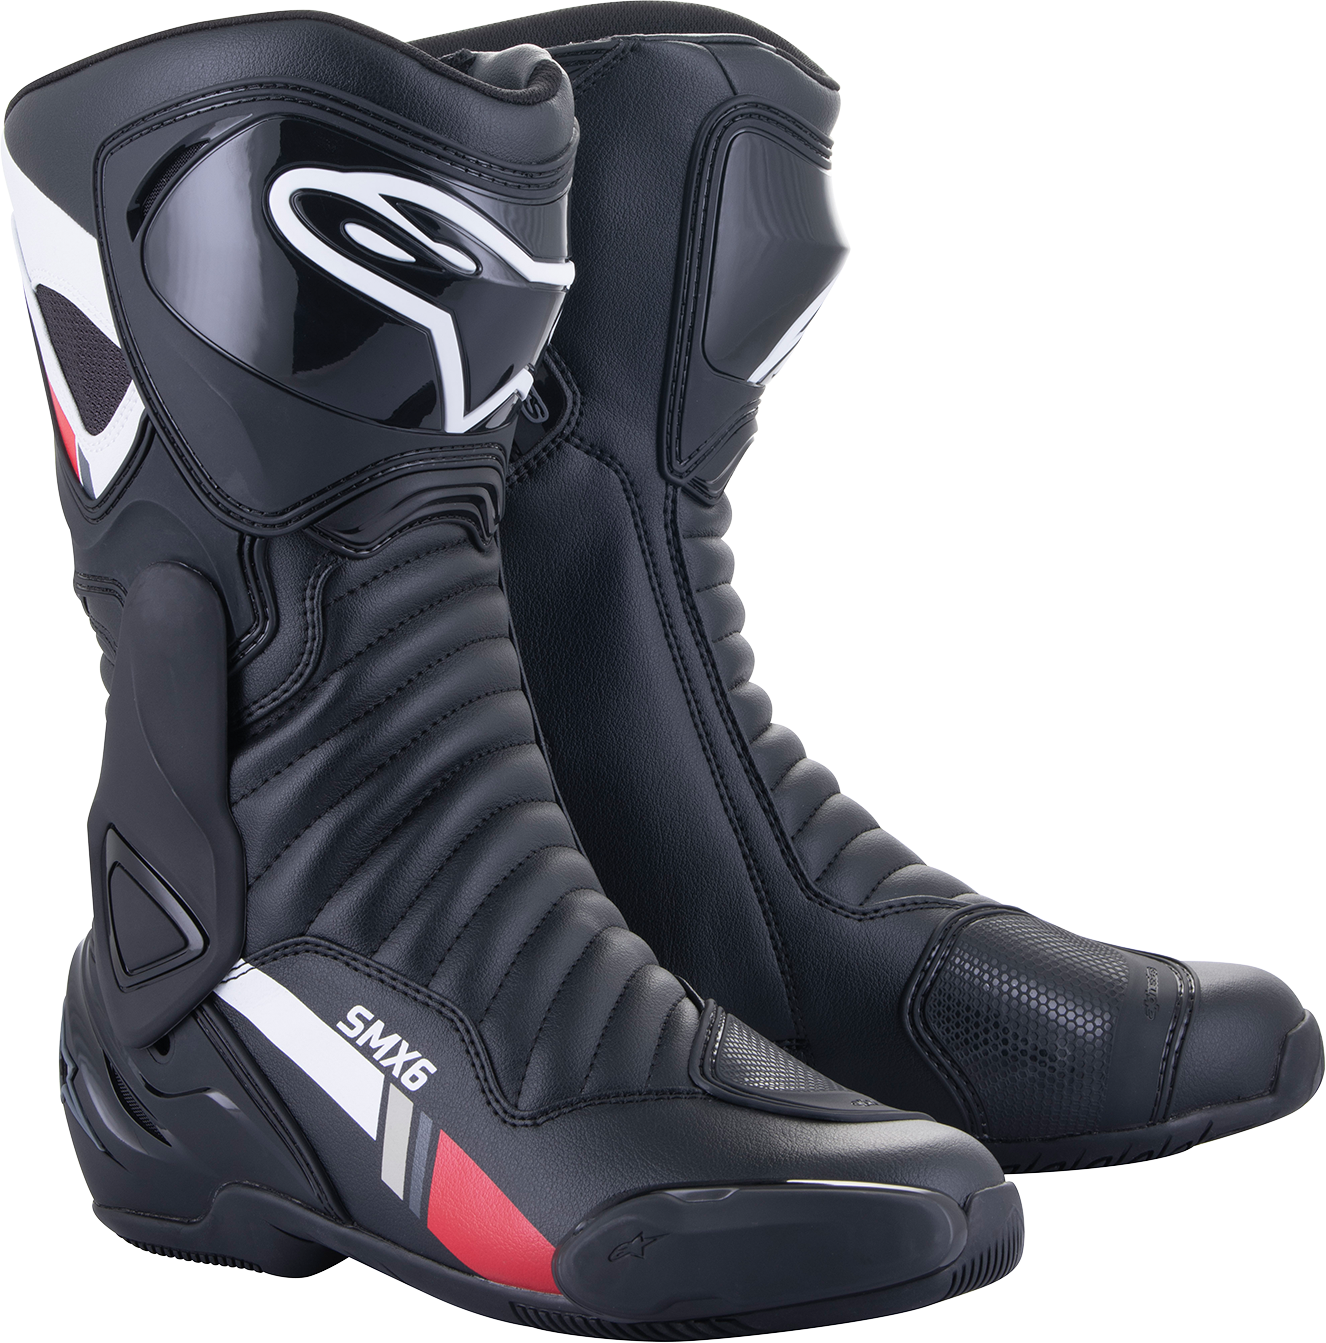 ALPINESTARS SMX-6 v2 Boots - Black/White/Gray - US 6.5 / EU 40 2223017-153-40